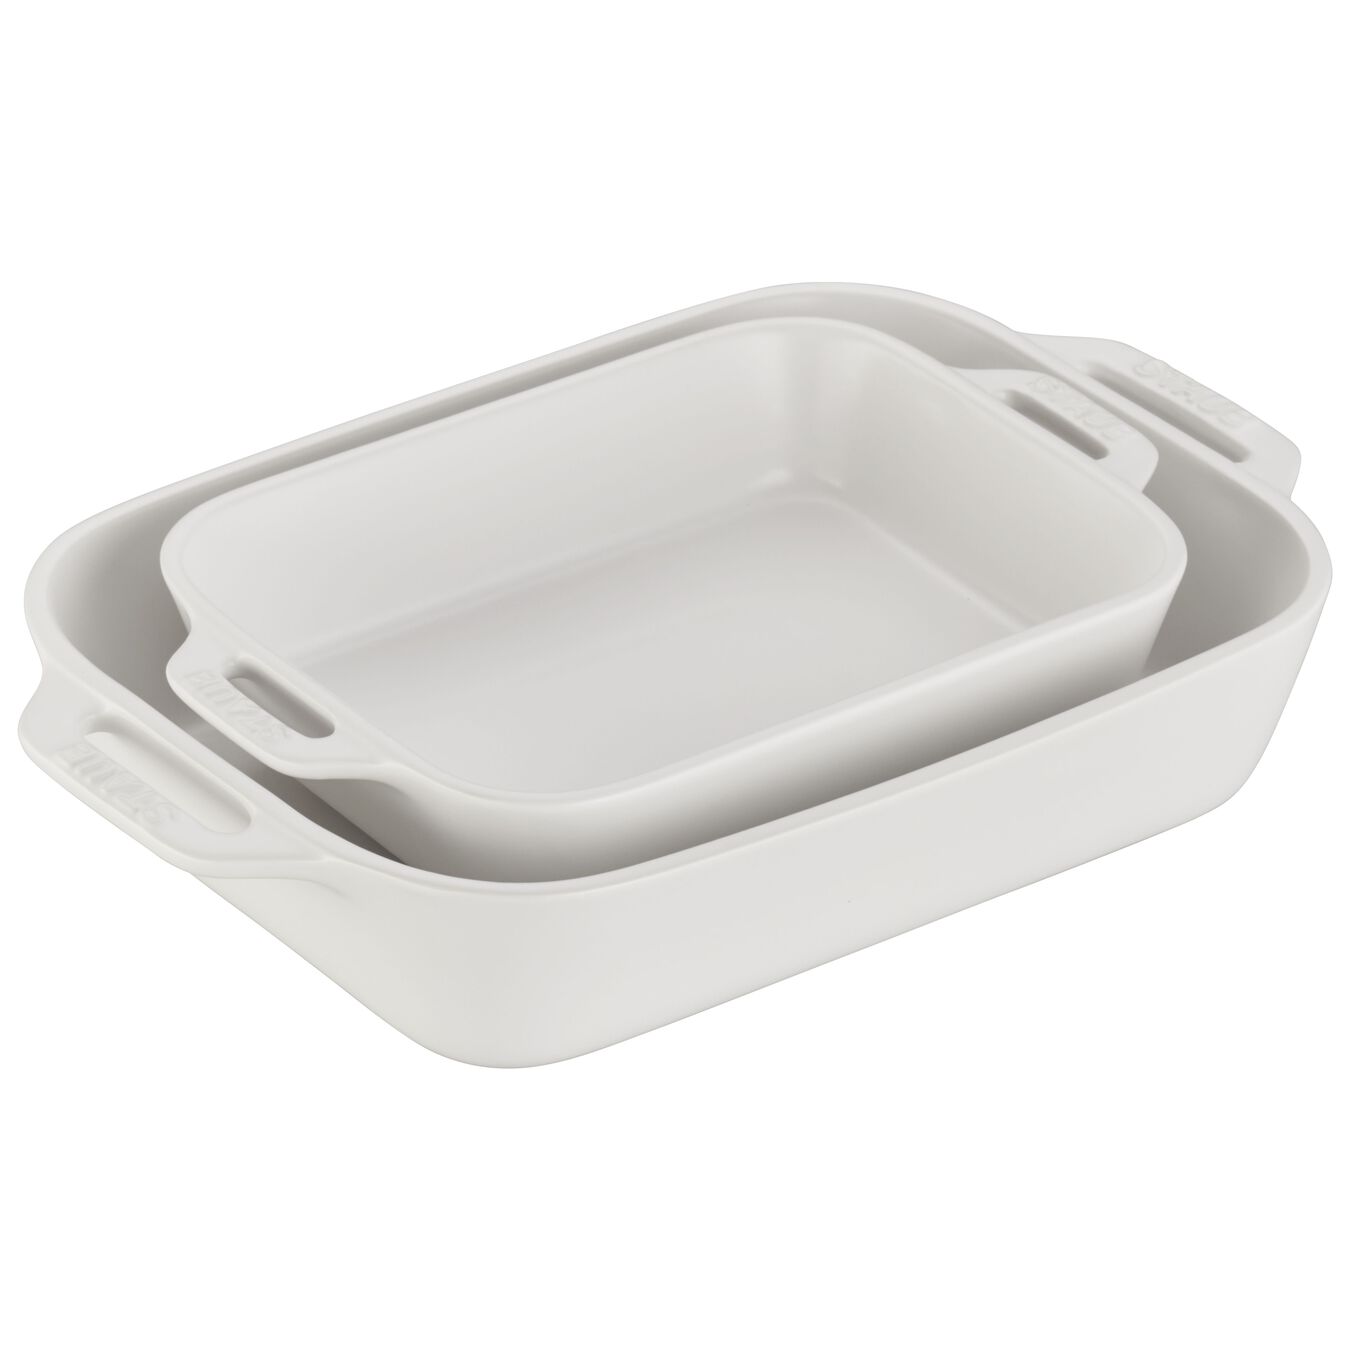 Staub Ceramic 7.5-inch x 6-inch Rectangular Baking Dish - White